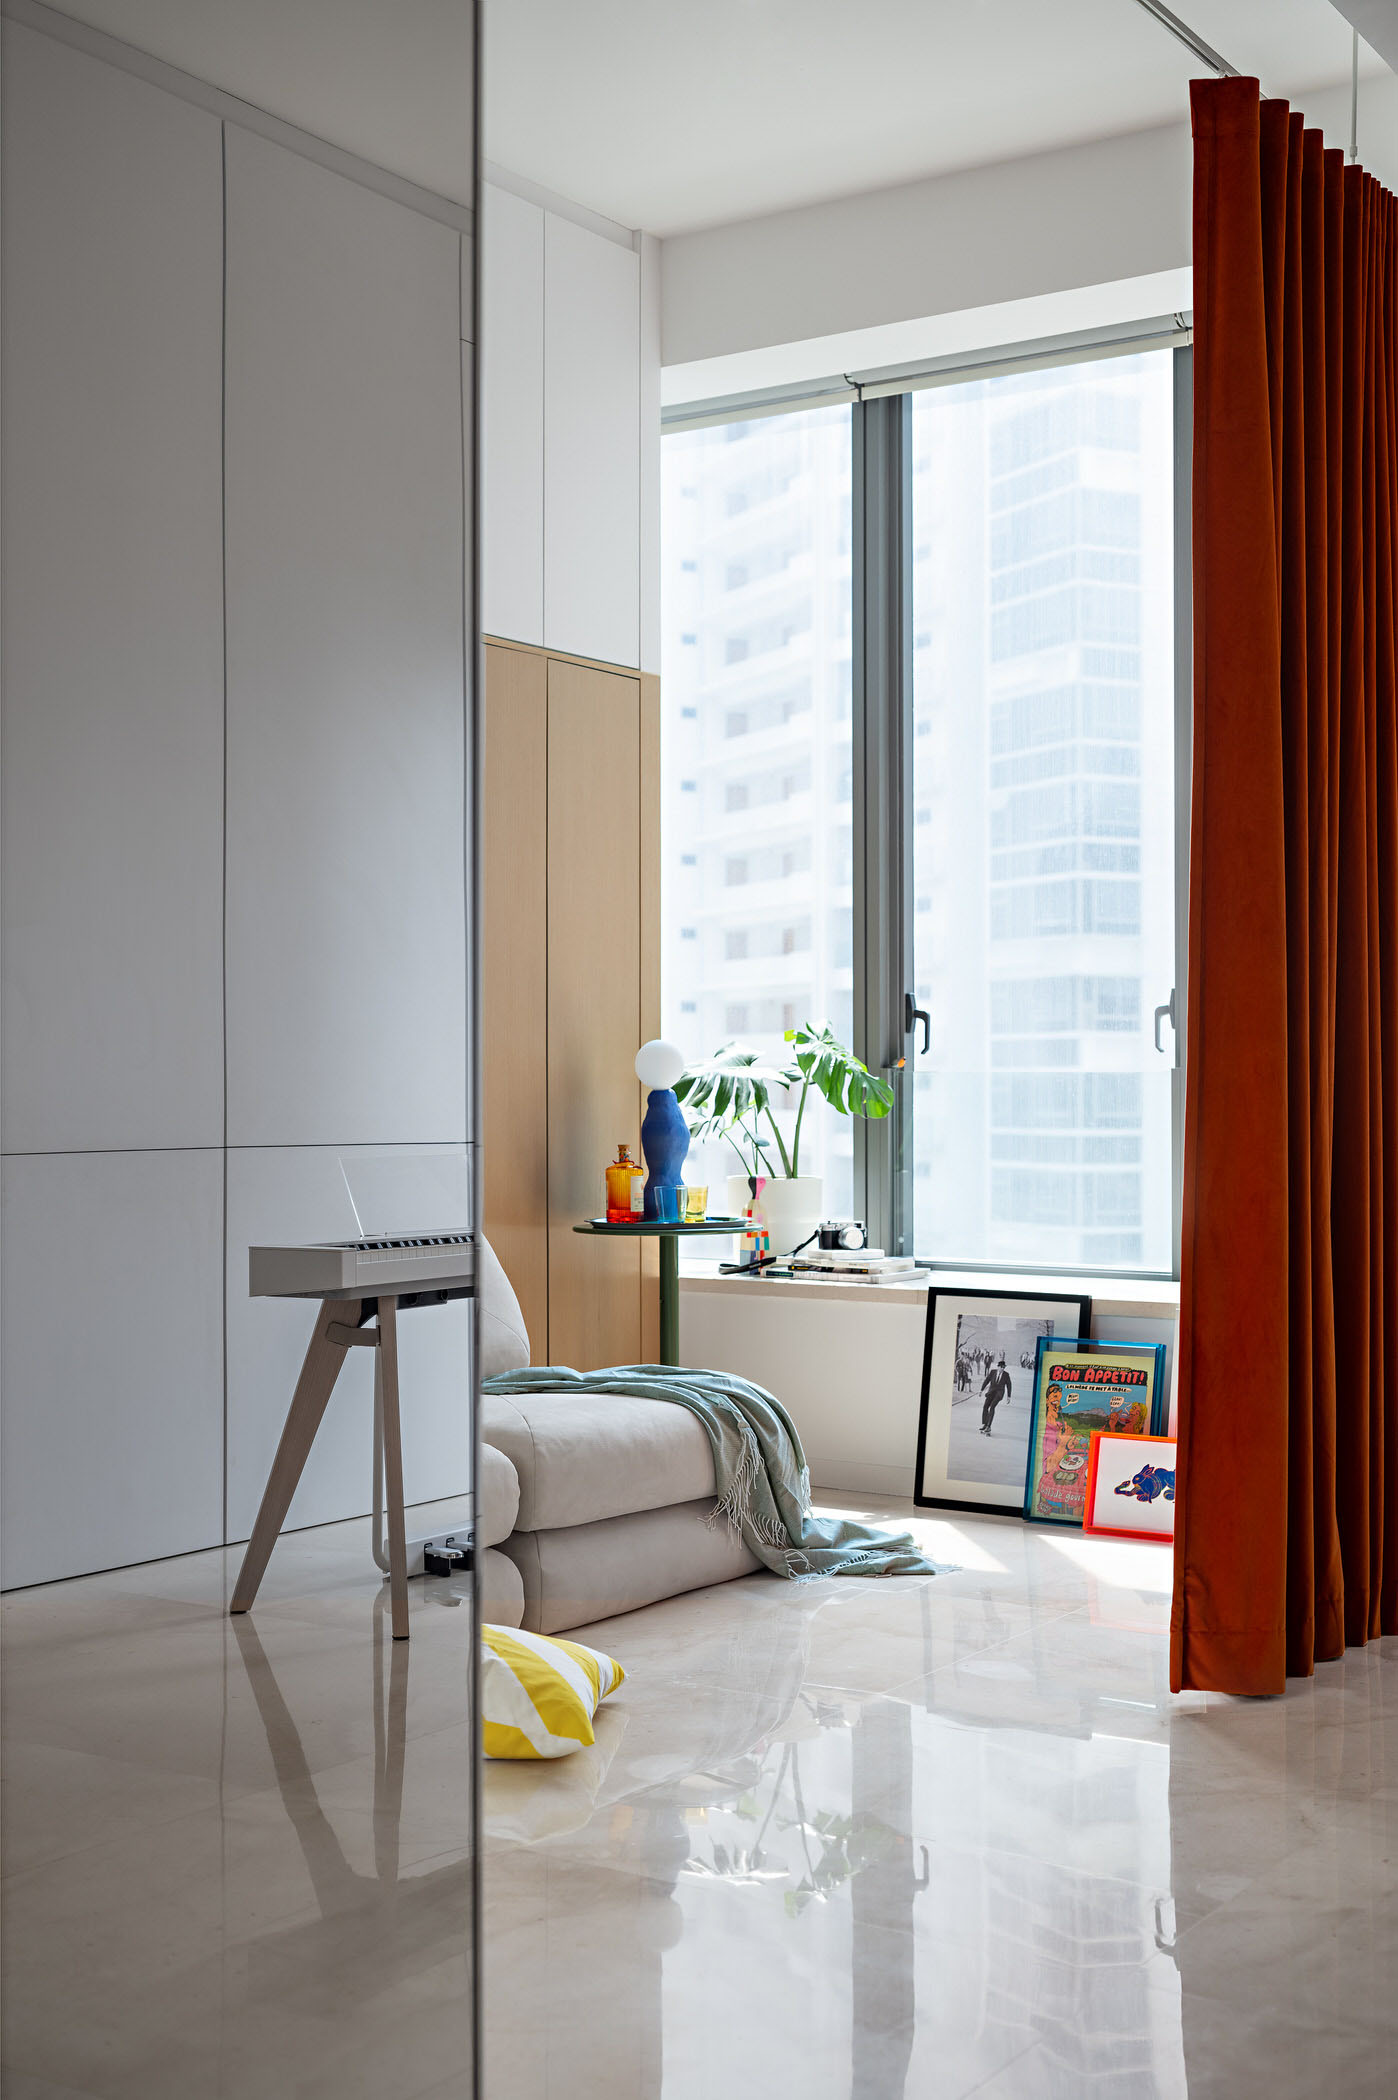 Design Pair,公寓设计案例,公寓设计方案,小户型设计,新加坡,公寓设计,SOHO